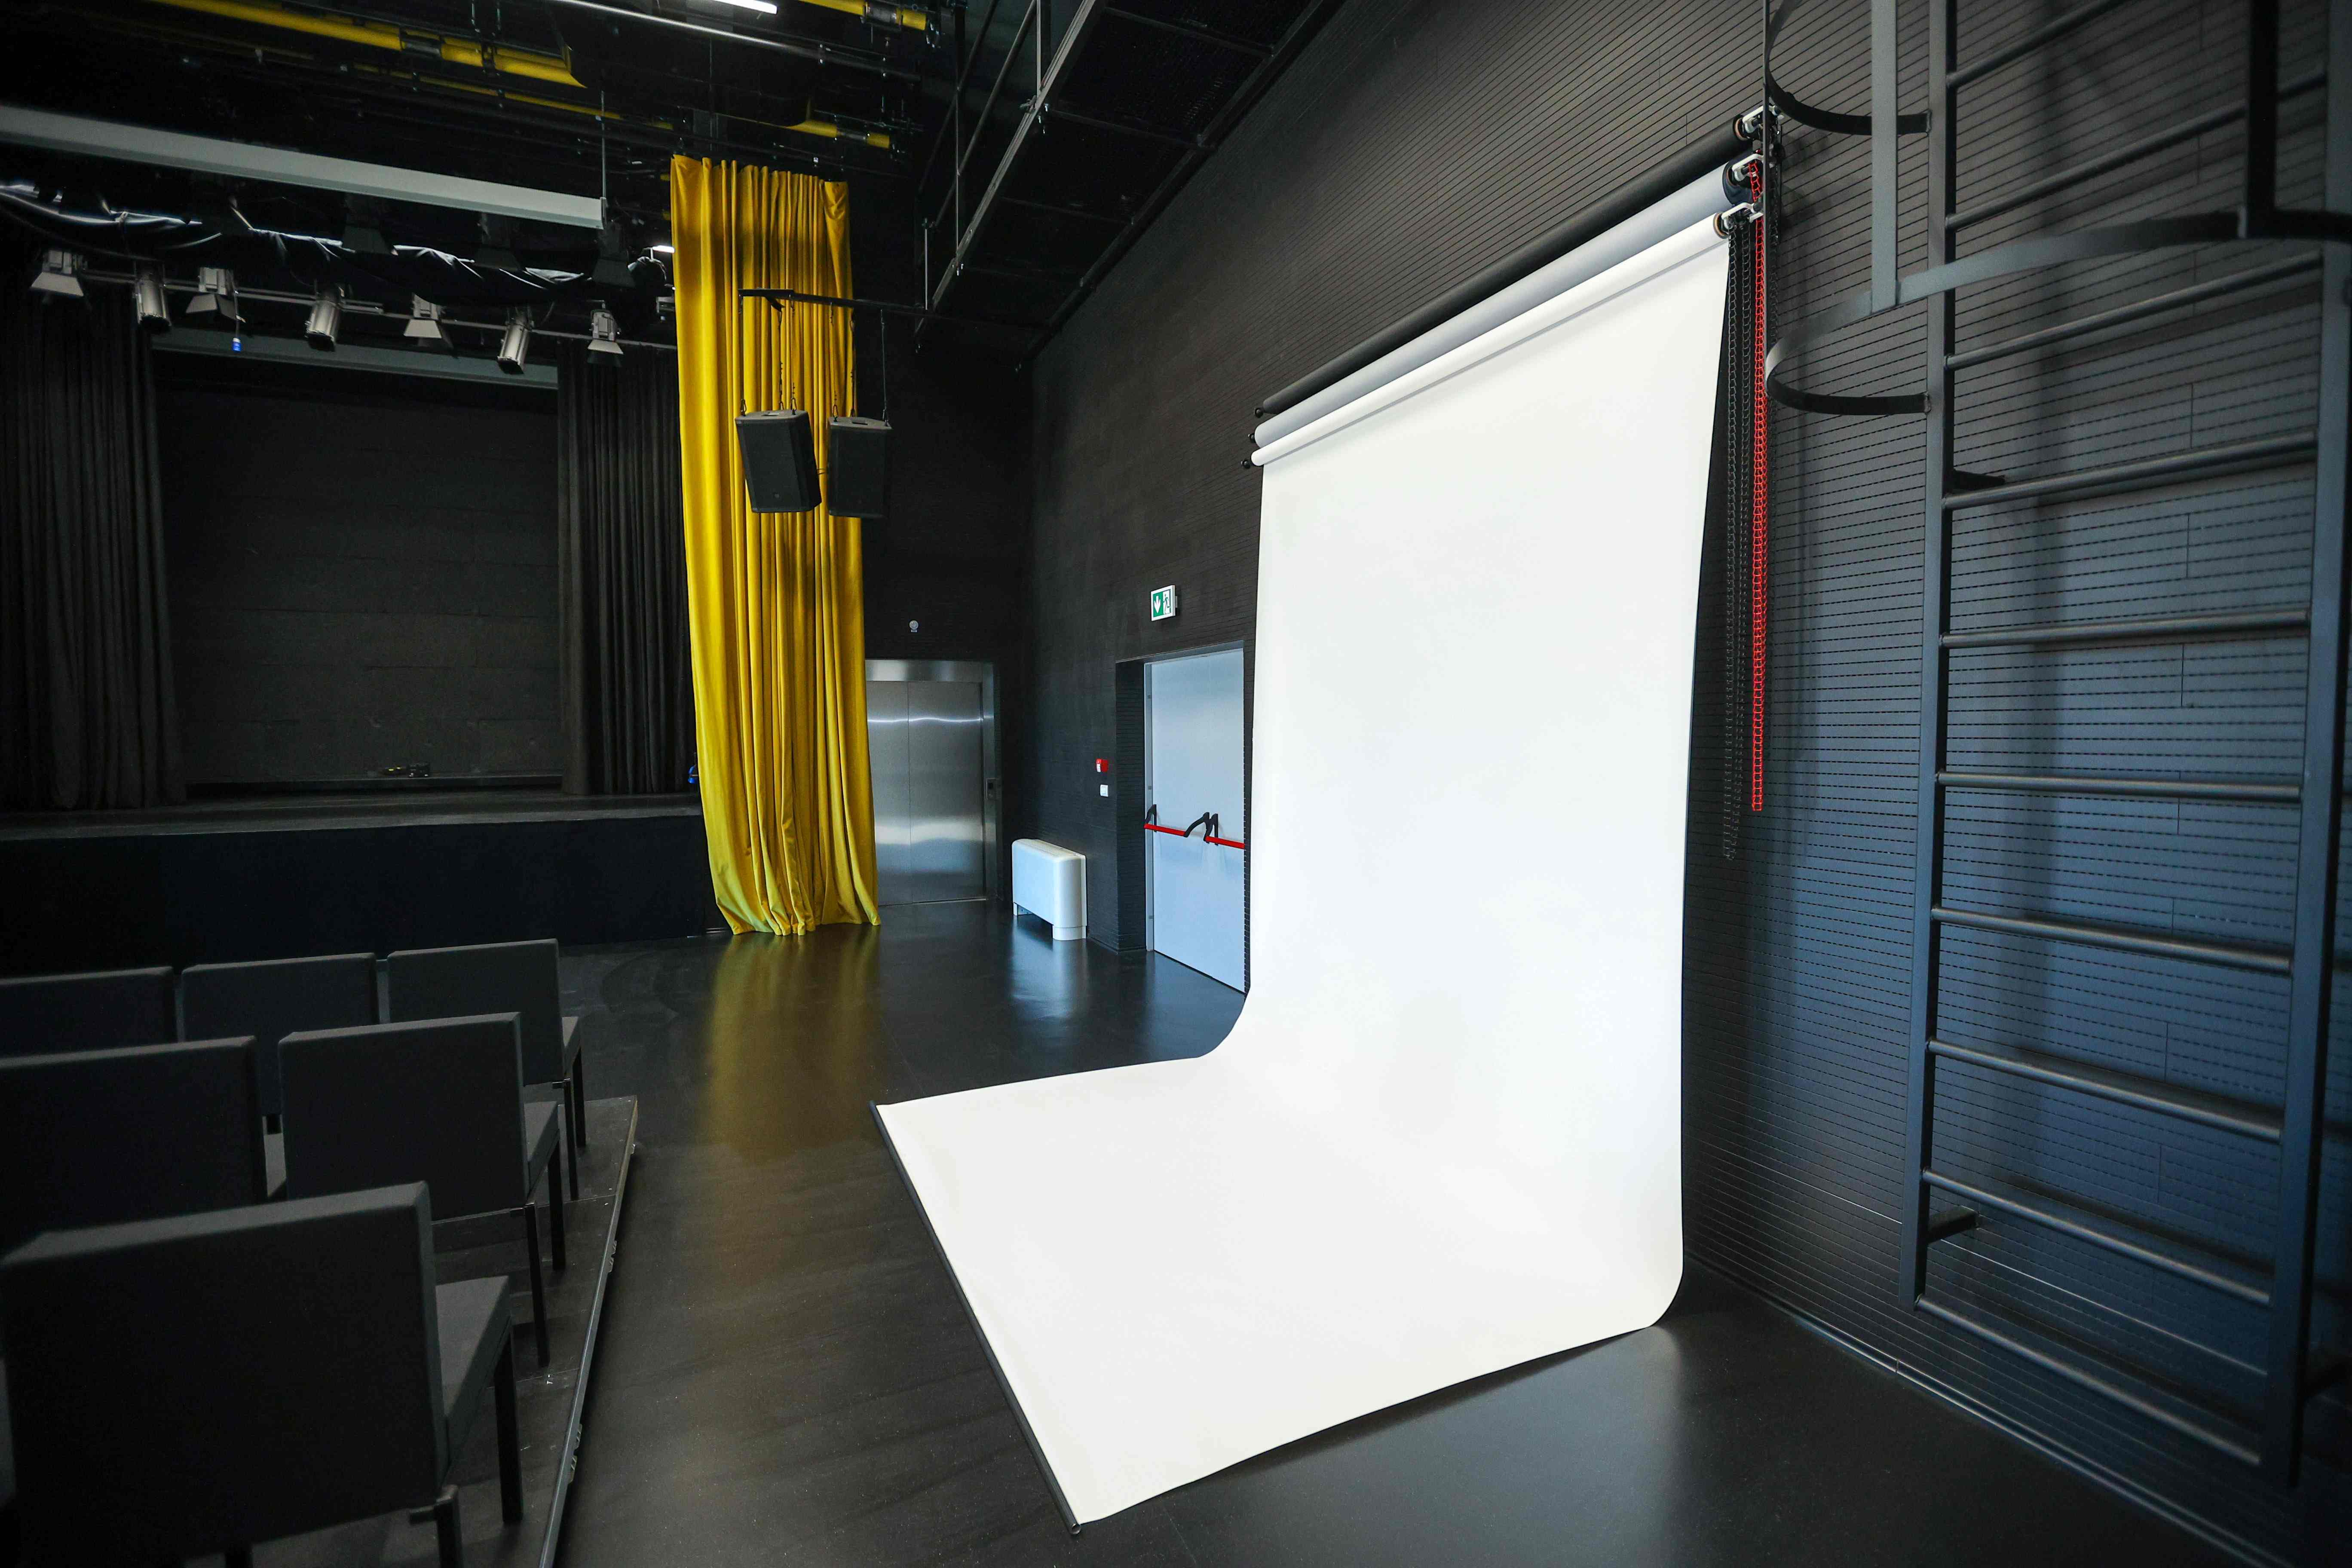 Foto studio i oprema za terensko snimanje naslovna